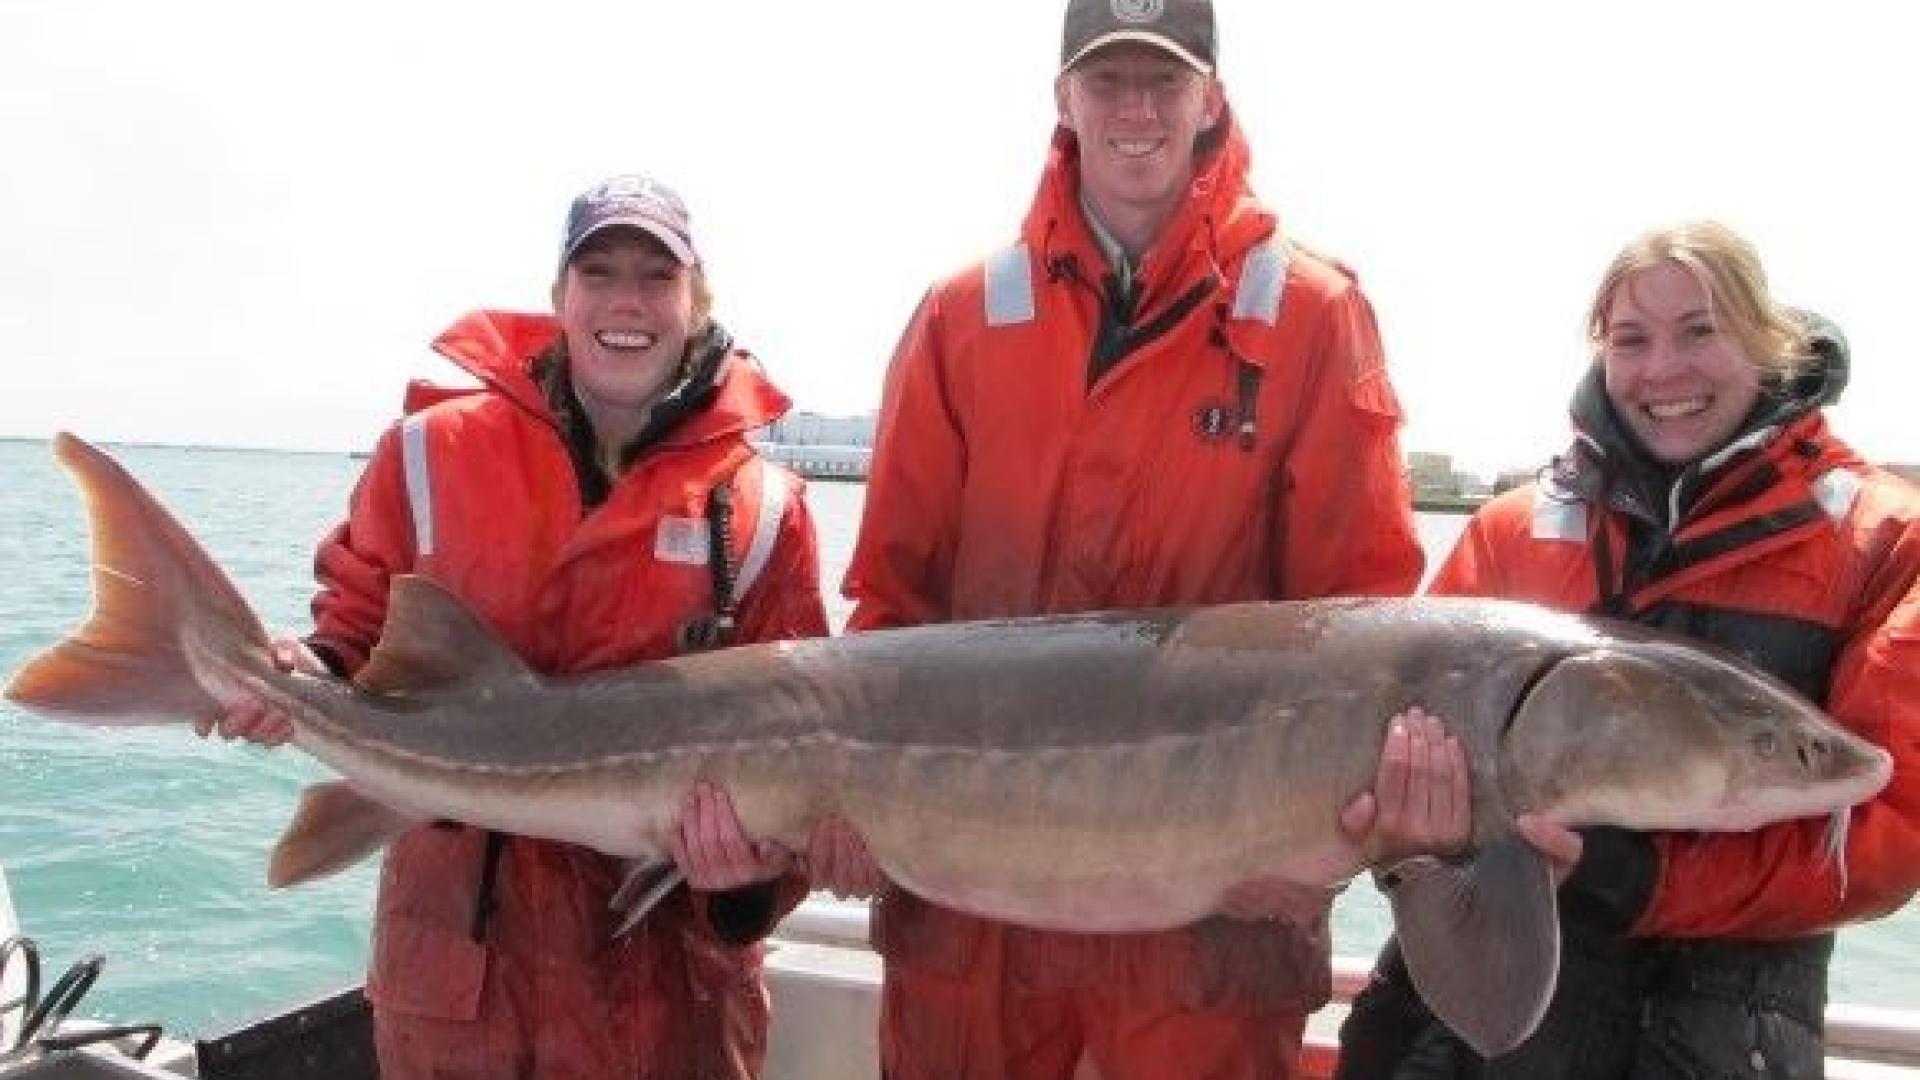 Three people holding huge lake sturgeon